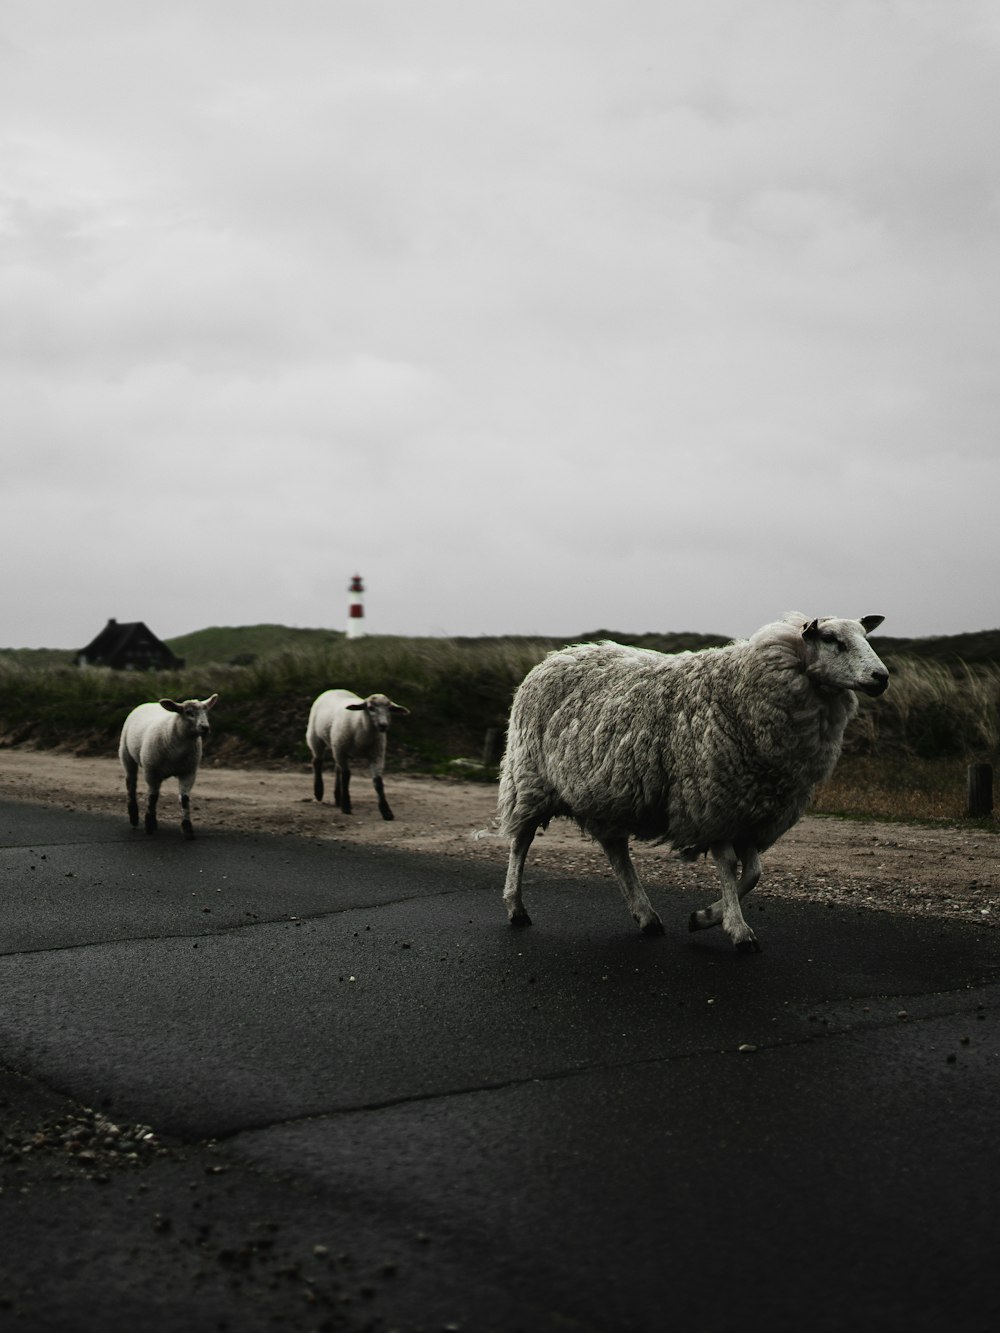 Rebaño de ovejas en camino asfaltado gris bajo cielo nublado blanco durante el día